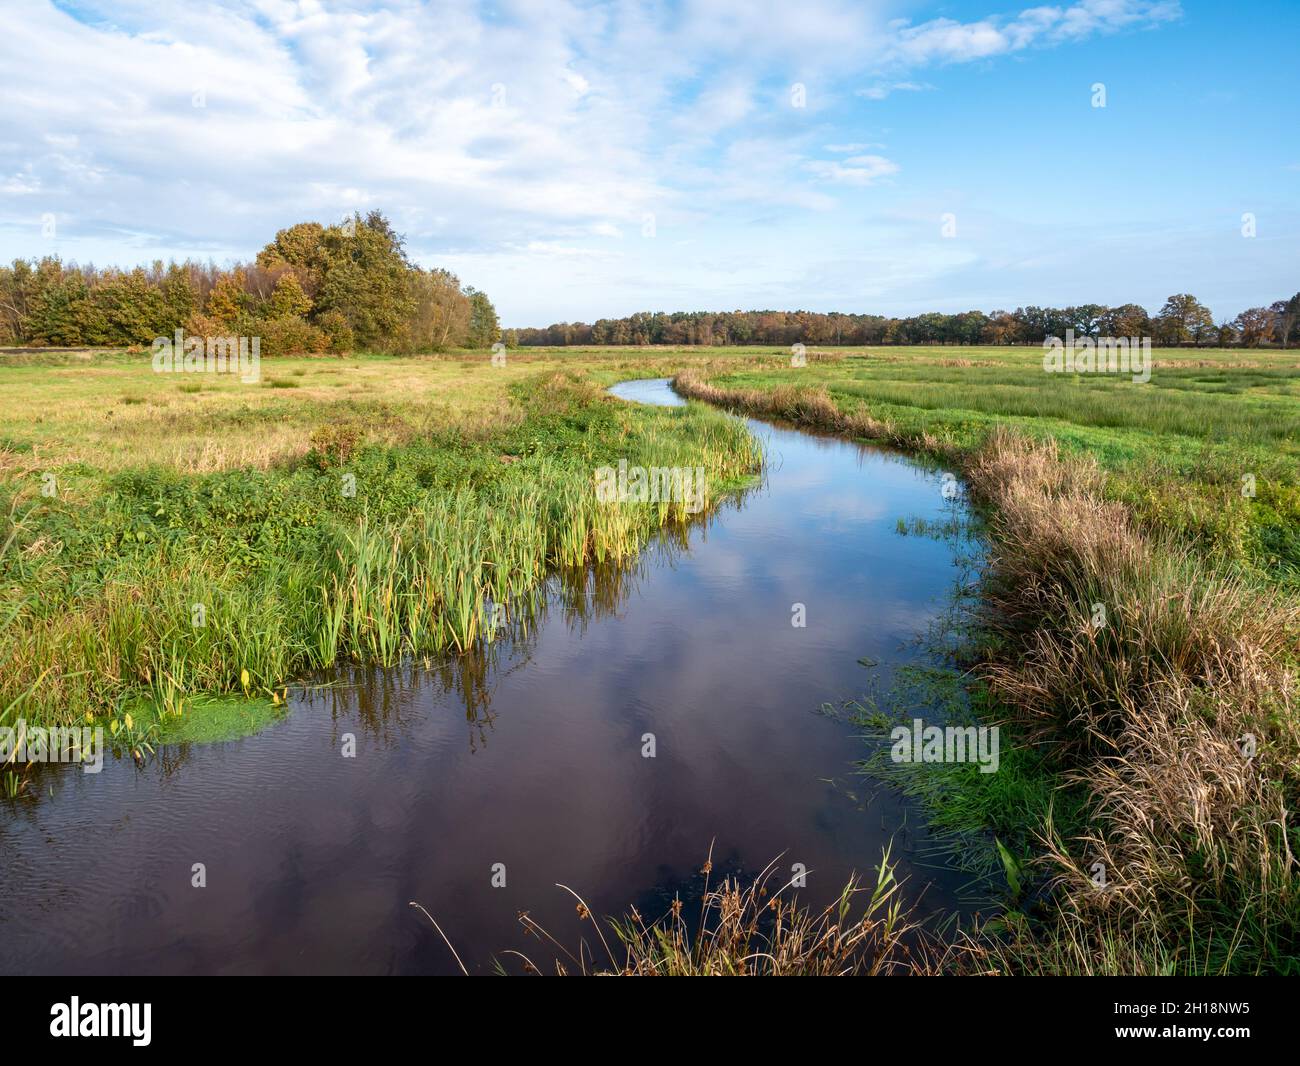 El río serpenteante Reest es la frontera entre Drenthe y Overijssel en la reserva natural de Reestdal cerca de Oud-Avereest, Países Bajos Foto de stock